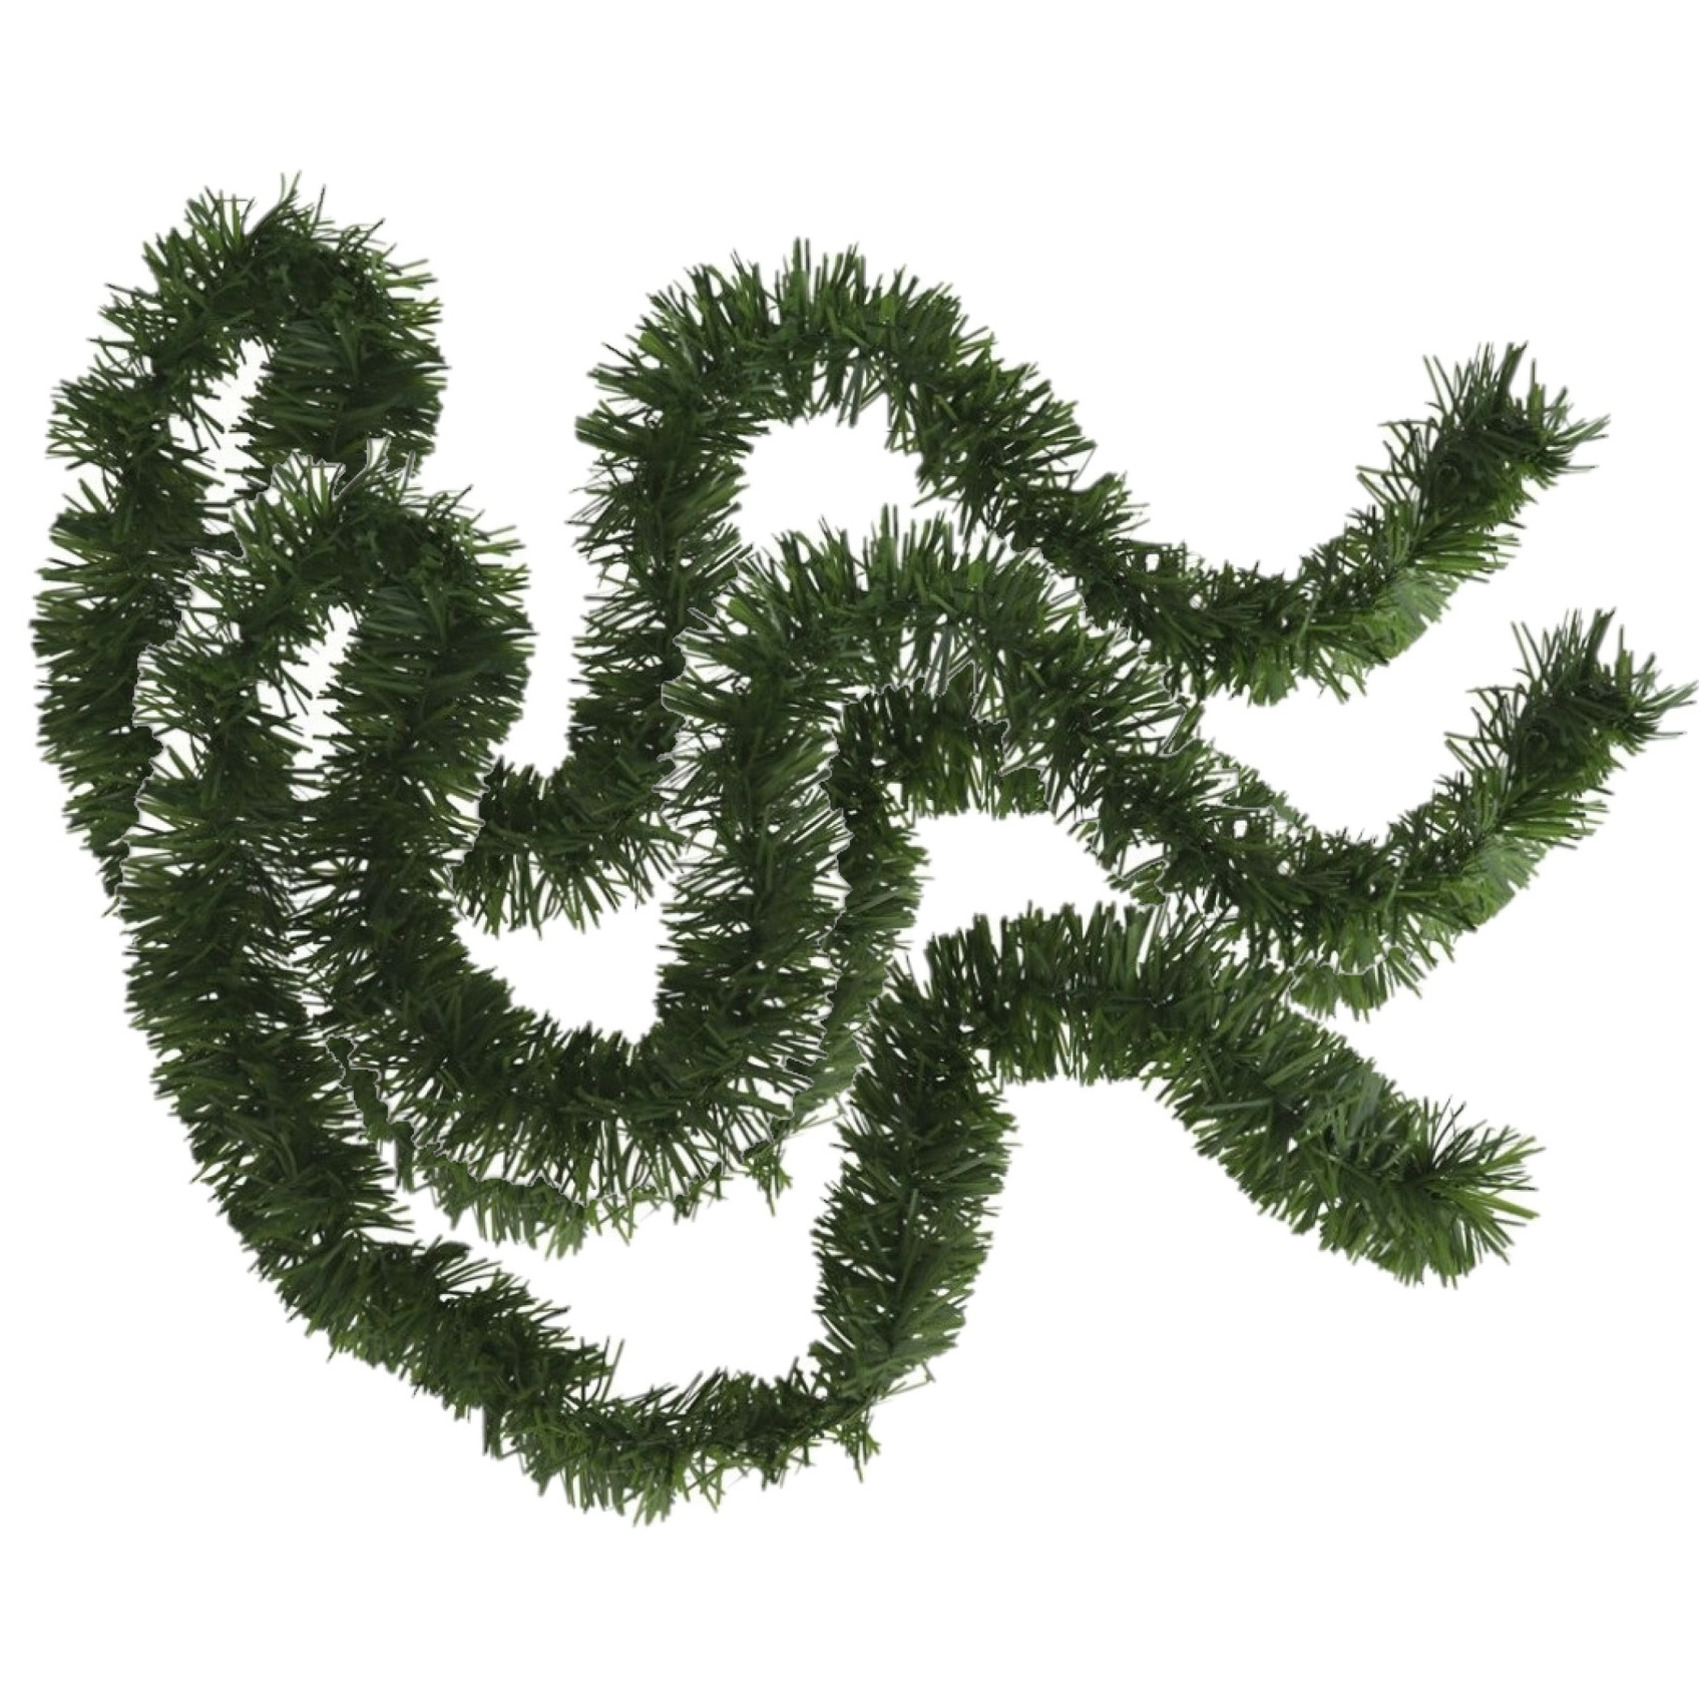 2x stuks kerstboom folie slingers-lametta guirlandes van 180 x 7 cm in de kleur glitter groen